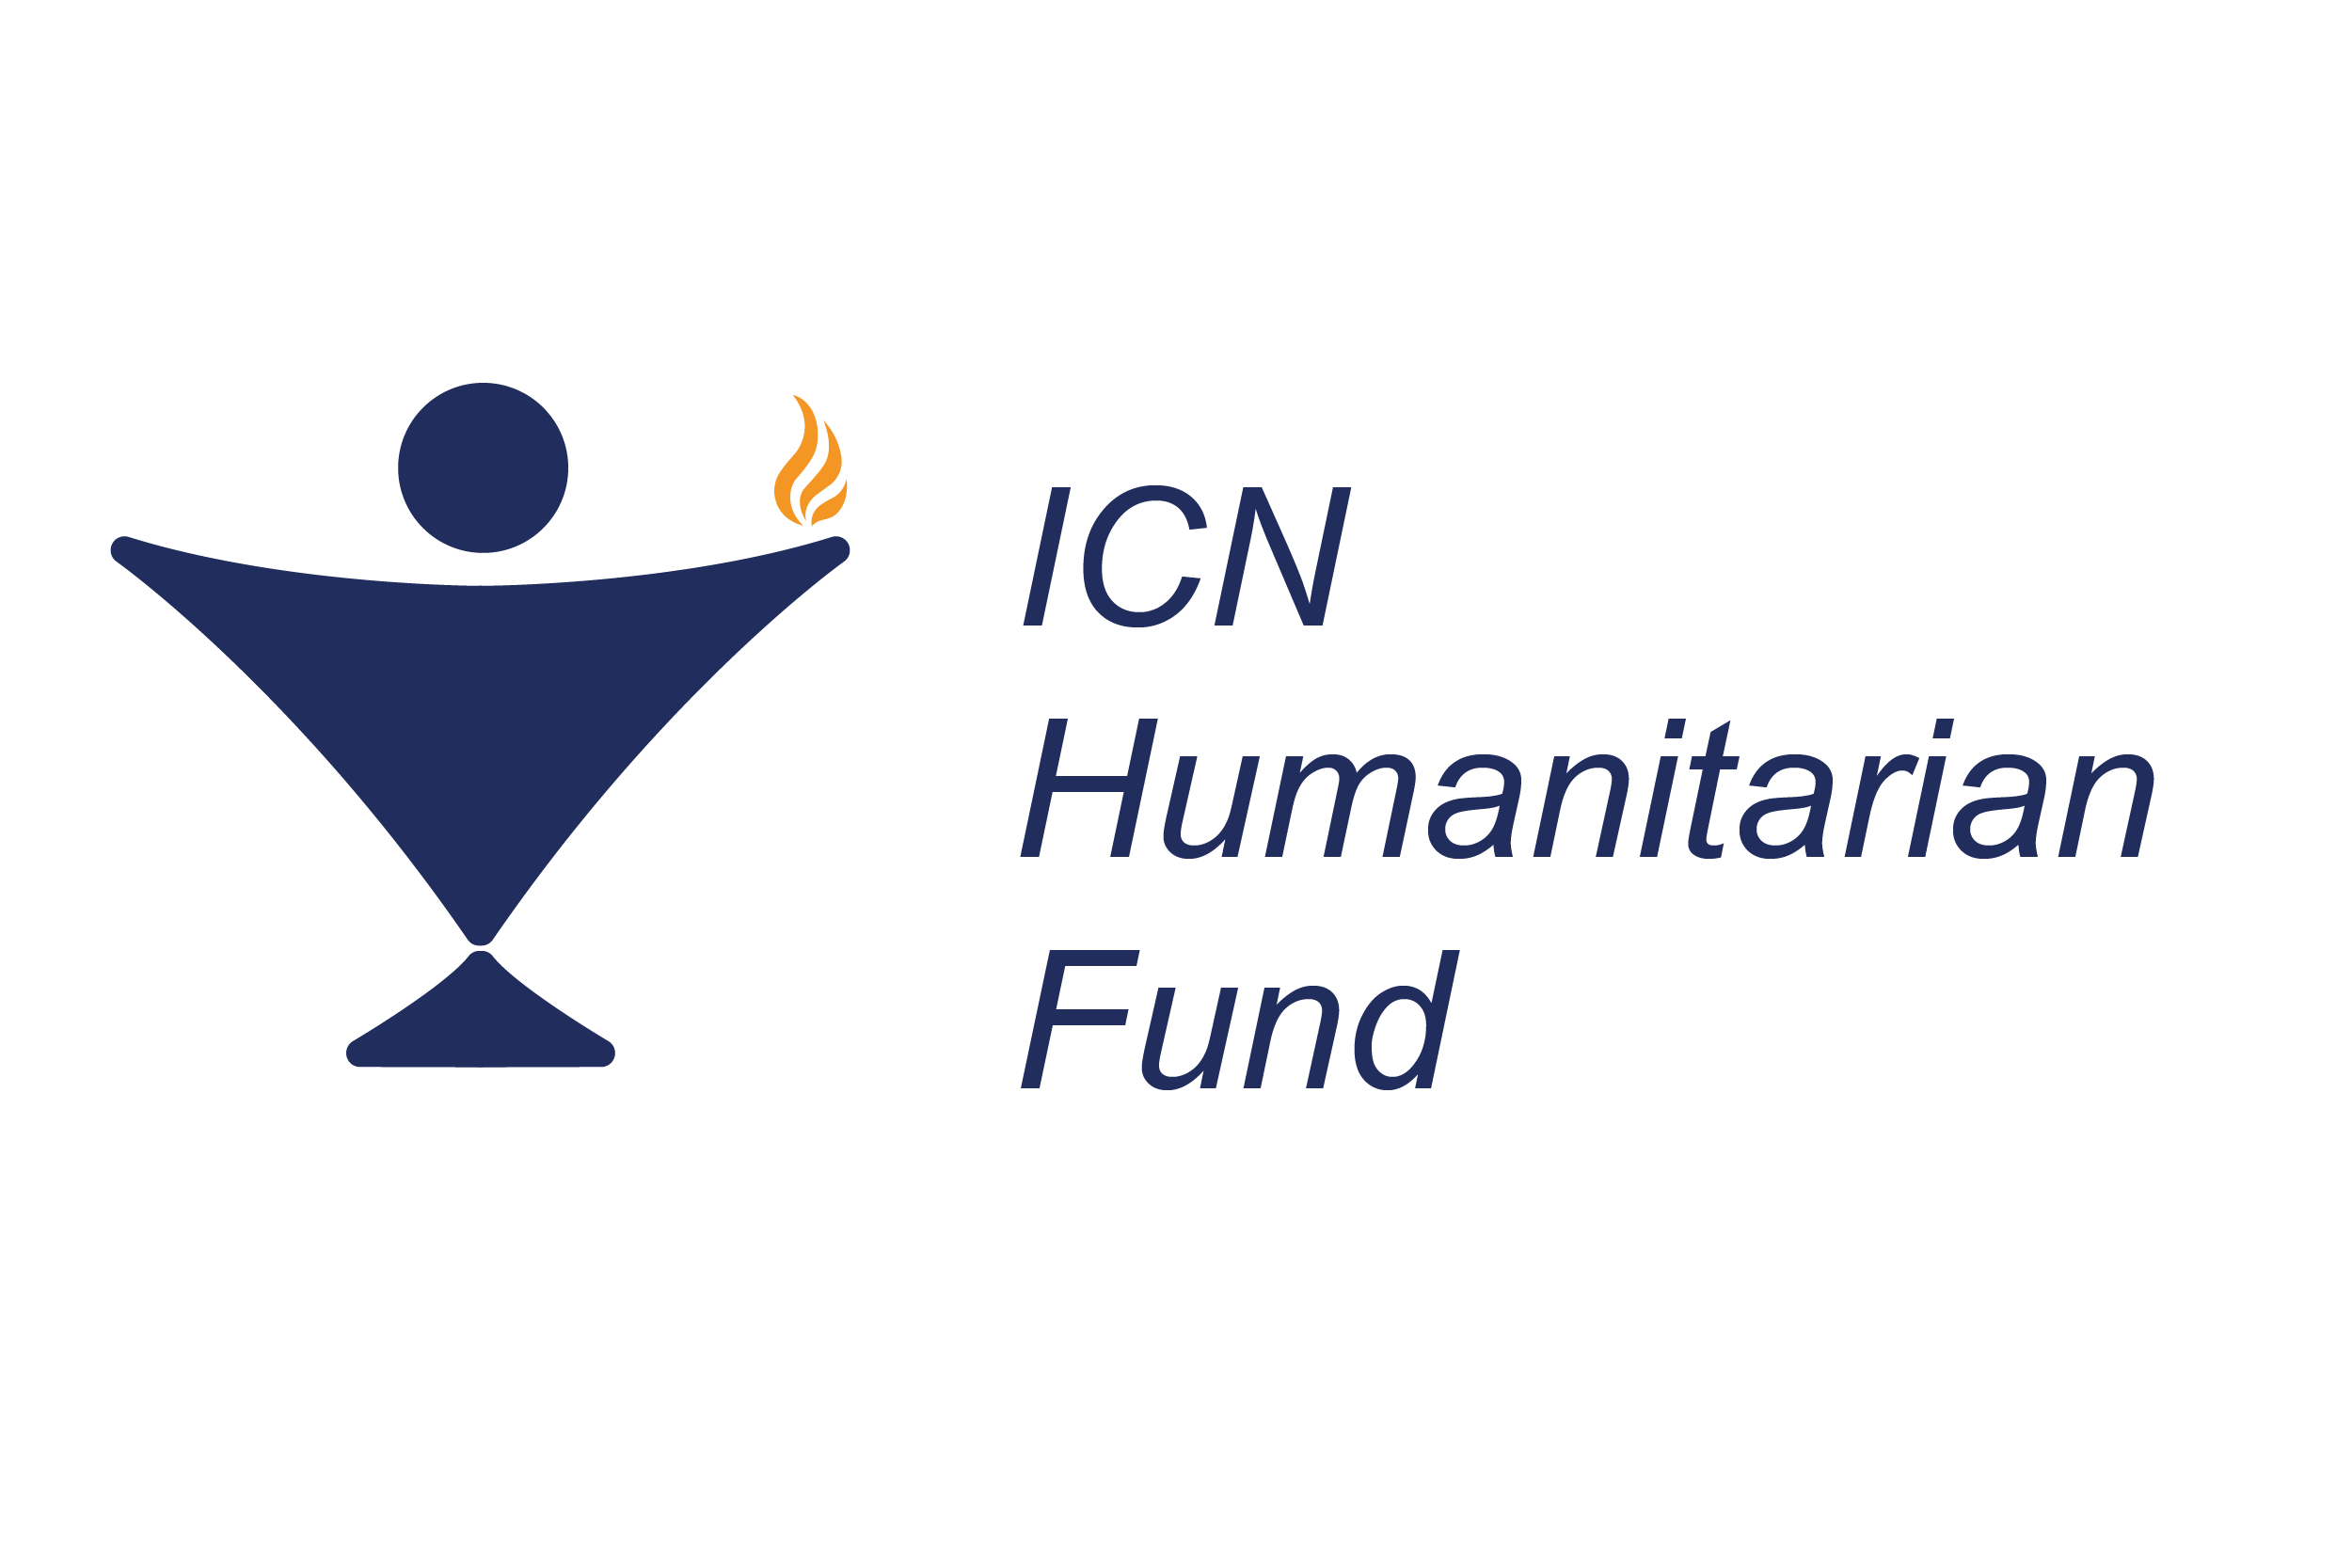 ICN Humanitarian Fund logo